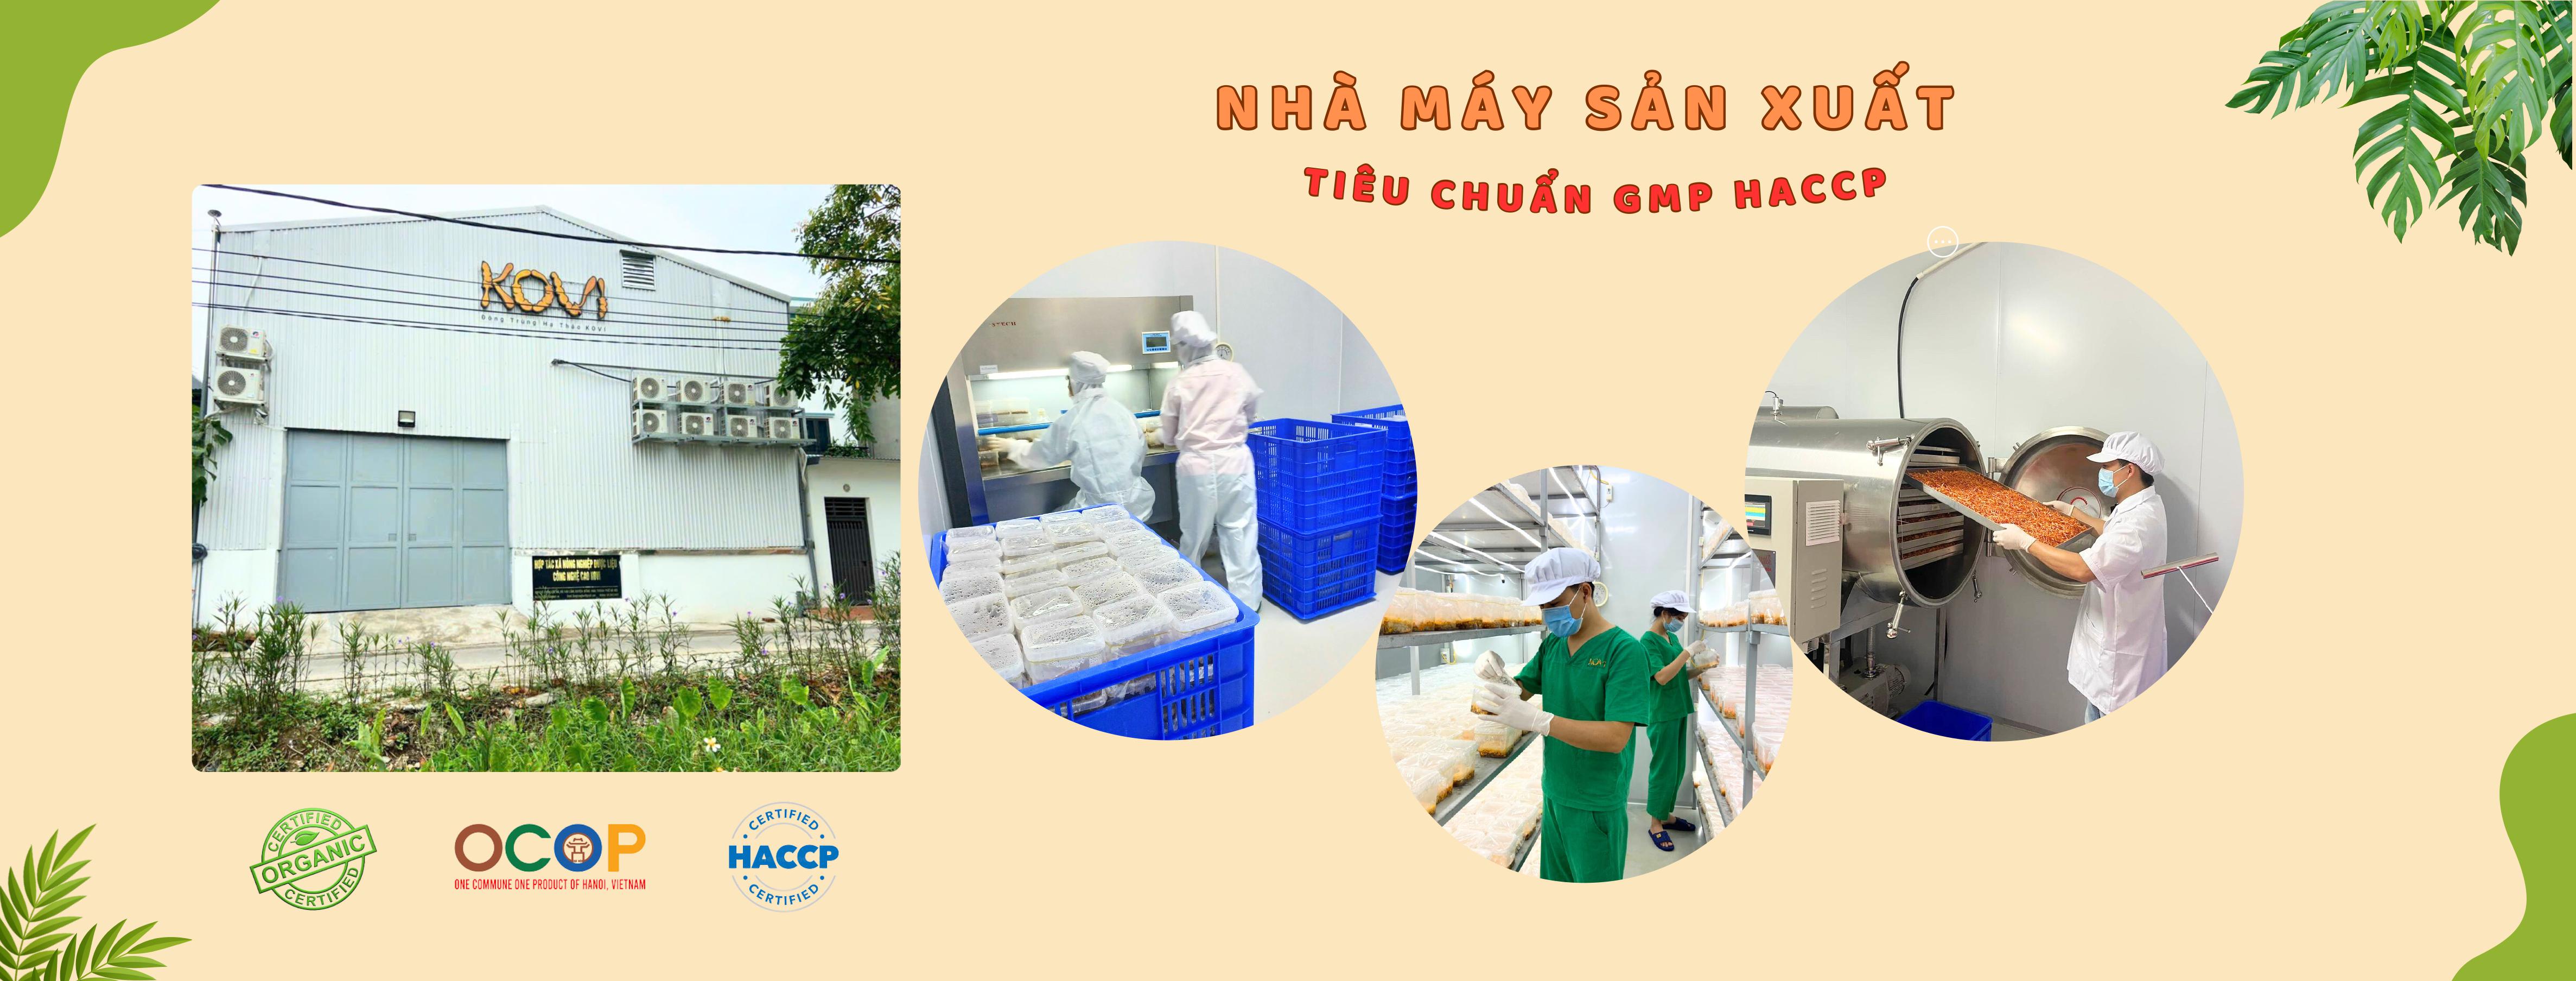 Nhà máy tiêu chuẩn GMP HACCP